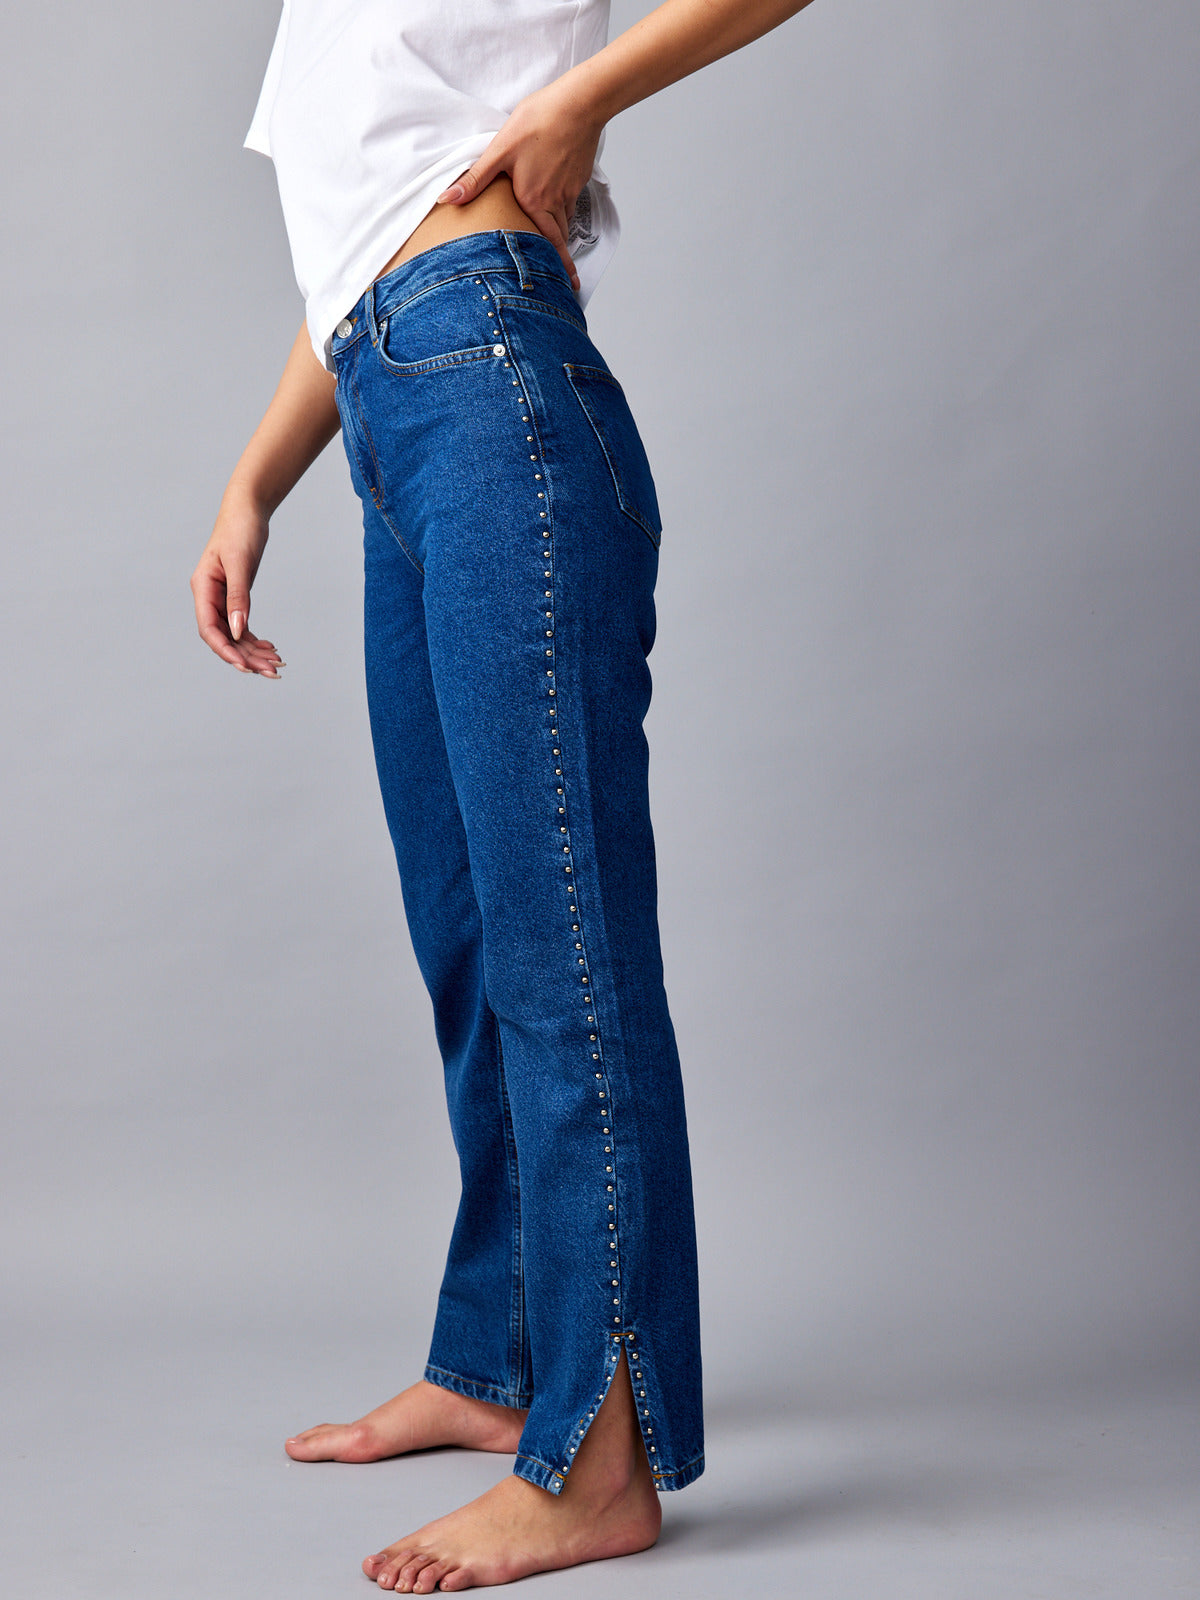 מכנסי ג'ינס עם ניטים- NA-KD|נייקד